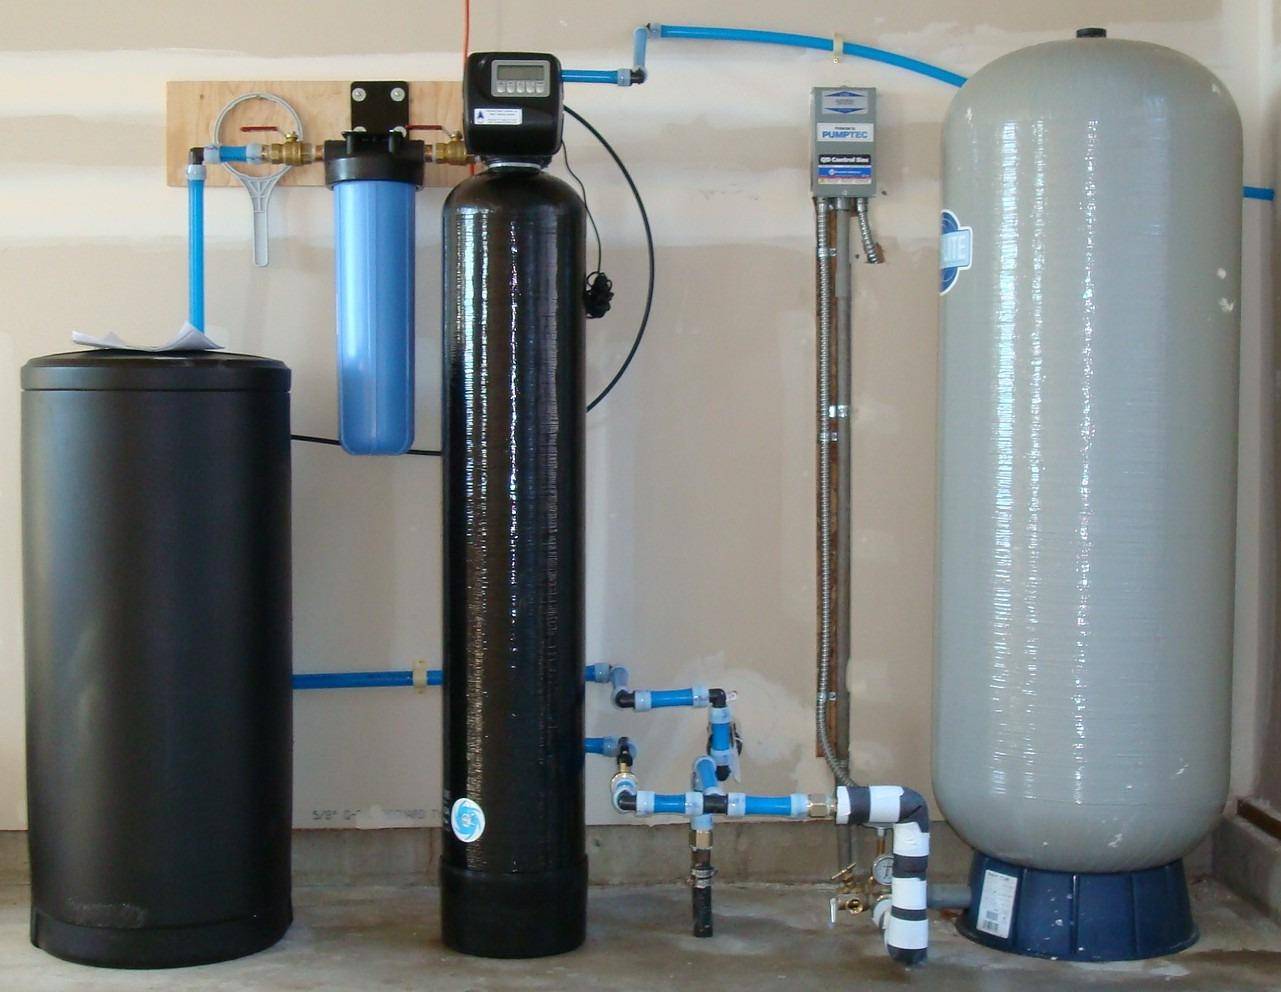 Фильтр для очистки воды: как выполнить обезжелезивание в скважине своими руками?